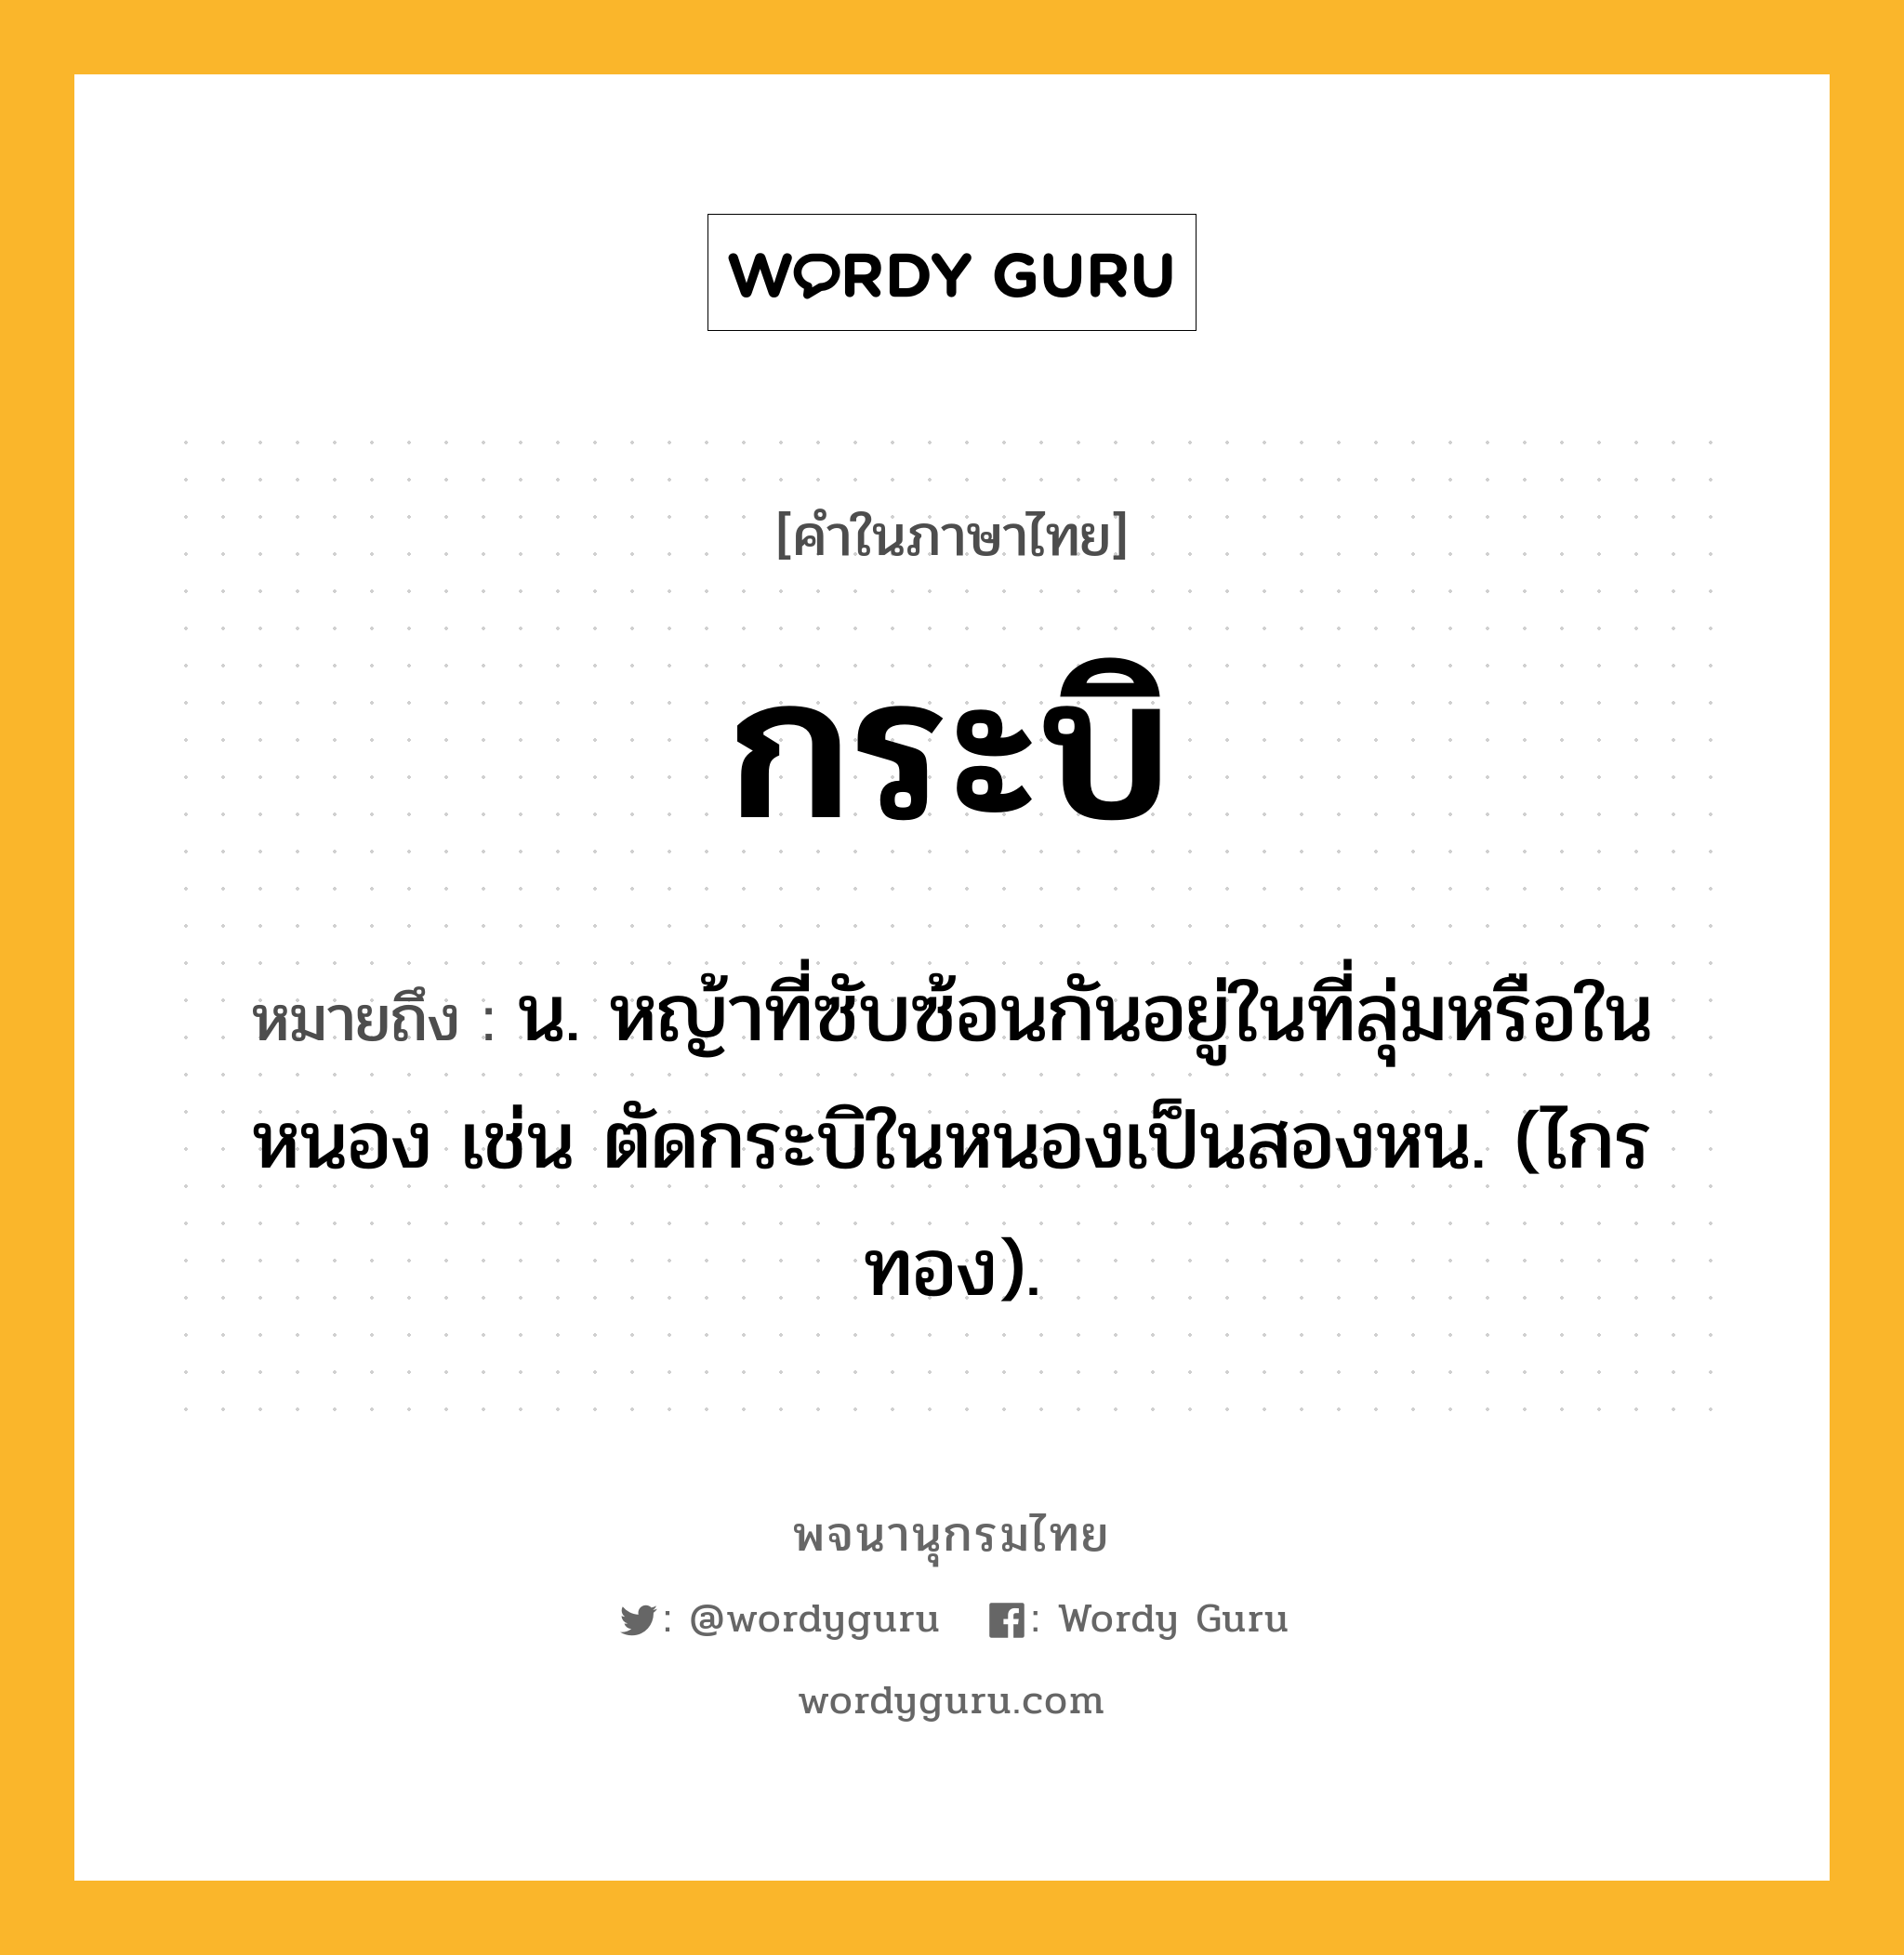 กระบิ หมายถึงอะไร?, คำในภาษาไทย กระบิ หมายถึง น. หญ้าที่ซับซ้อนกันอยู่ในที่ลุ่มหรือในหนอง เช่น ตัดกระบิในหนองเป็นสองหน. (ไกรทอง).